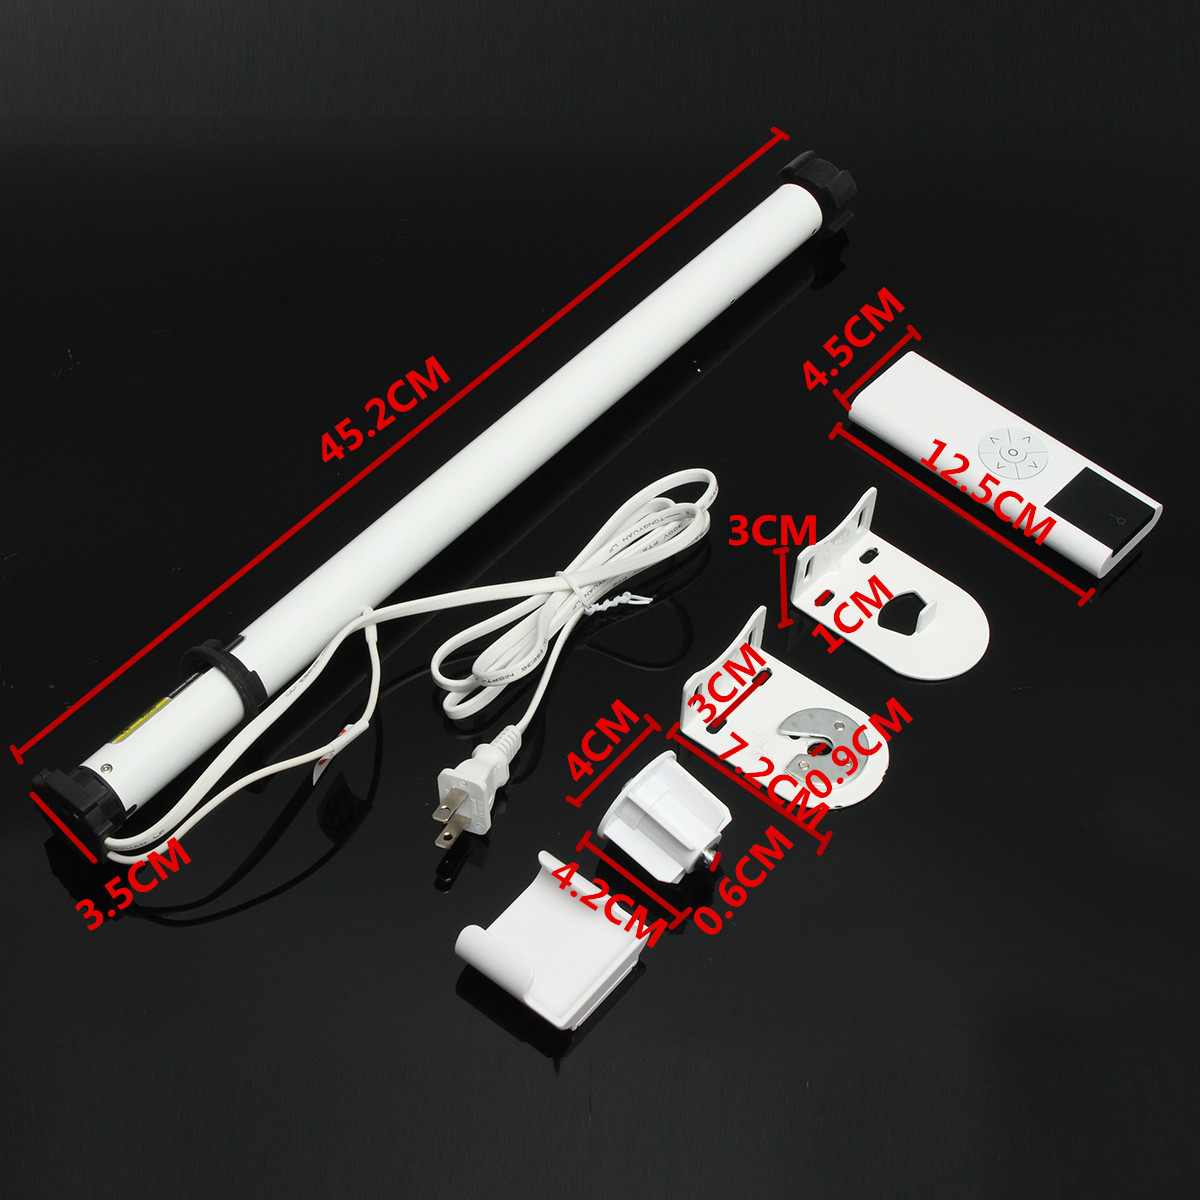 25mm-Remote-Control-Electric-Roller-Blind-Motor-Remote-Transmitter-Shade-Tubular-Bracket-1264702-1